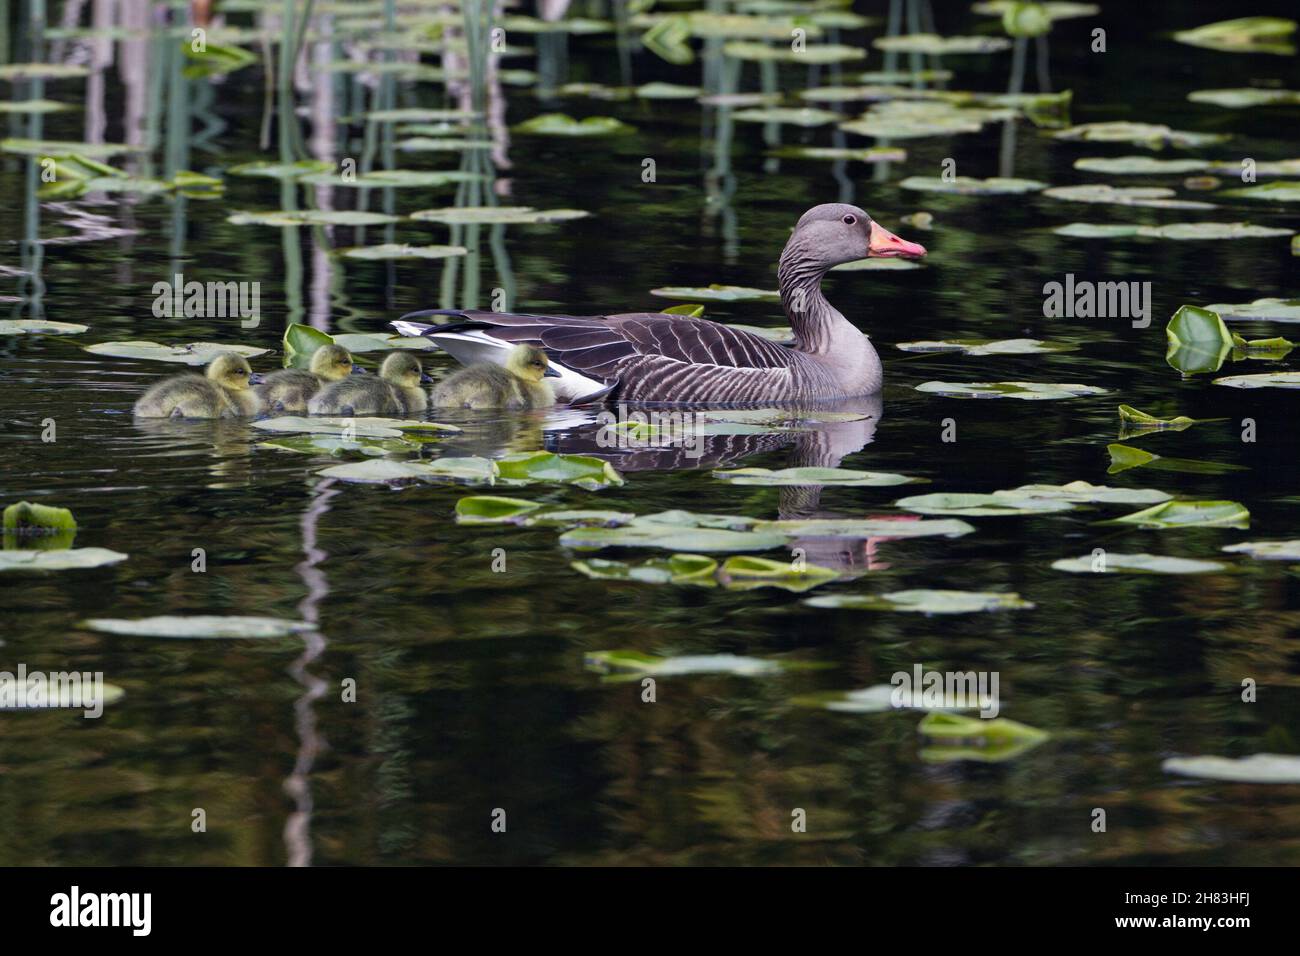 Graylag Goose, (Anser anser), oiseau parent sur le lac avec des oisons Basse-Saxe - Allemagne Banque D'Images